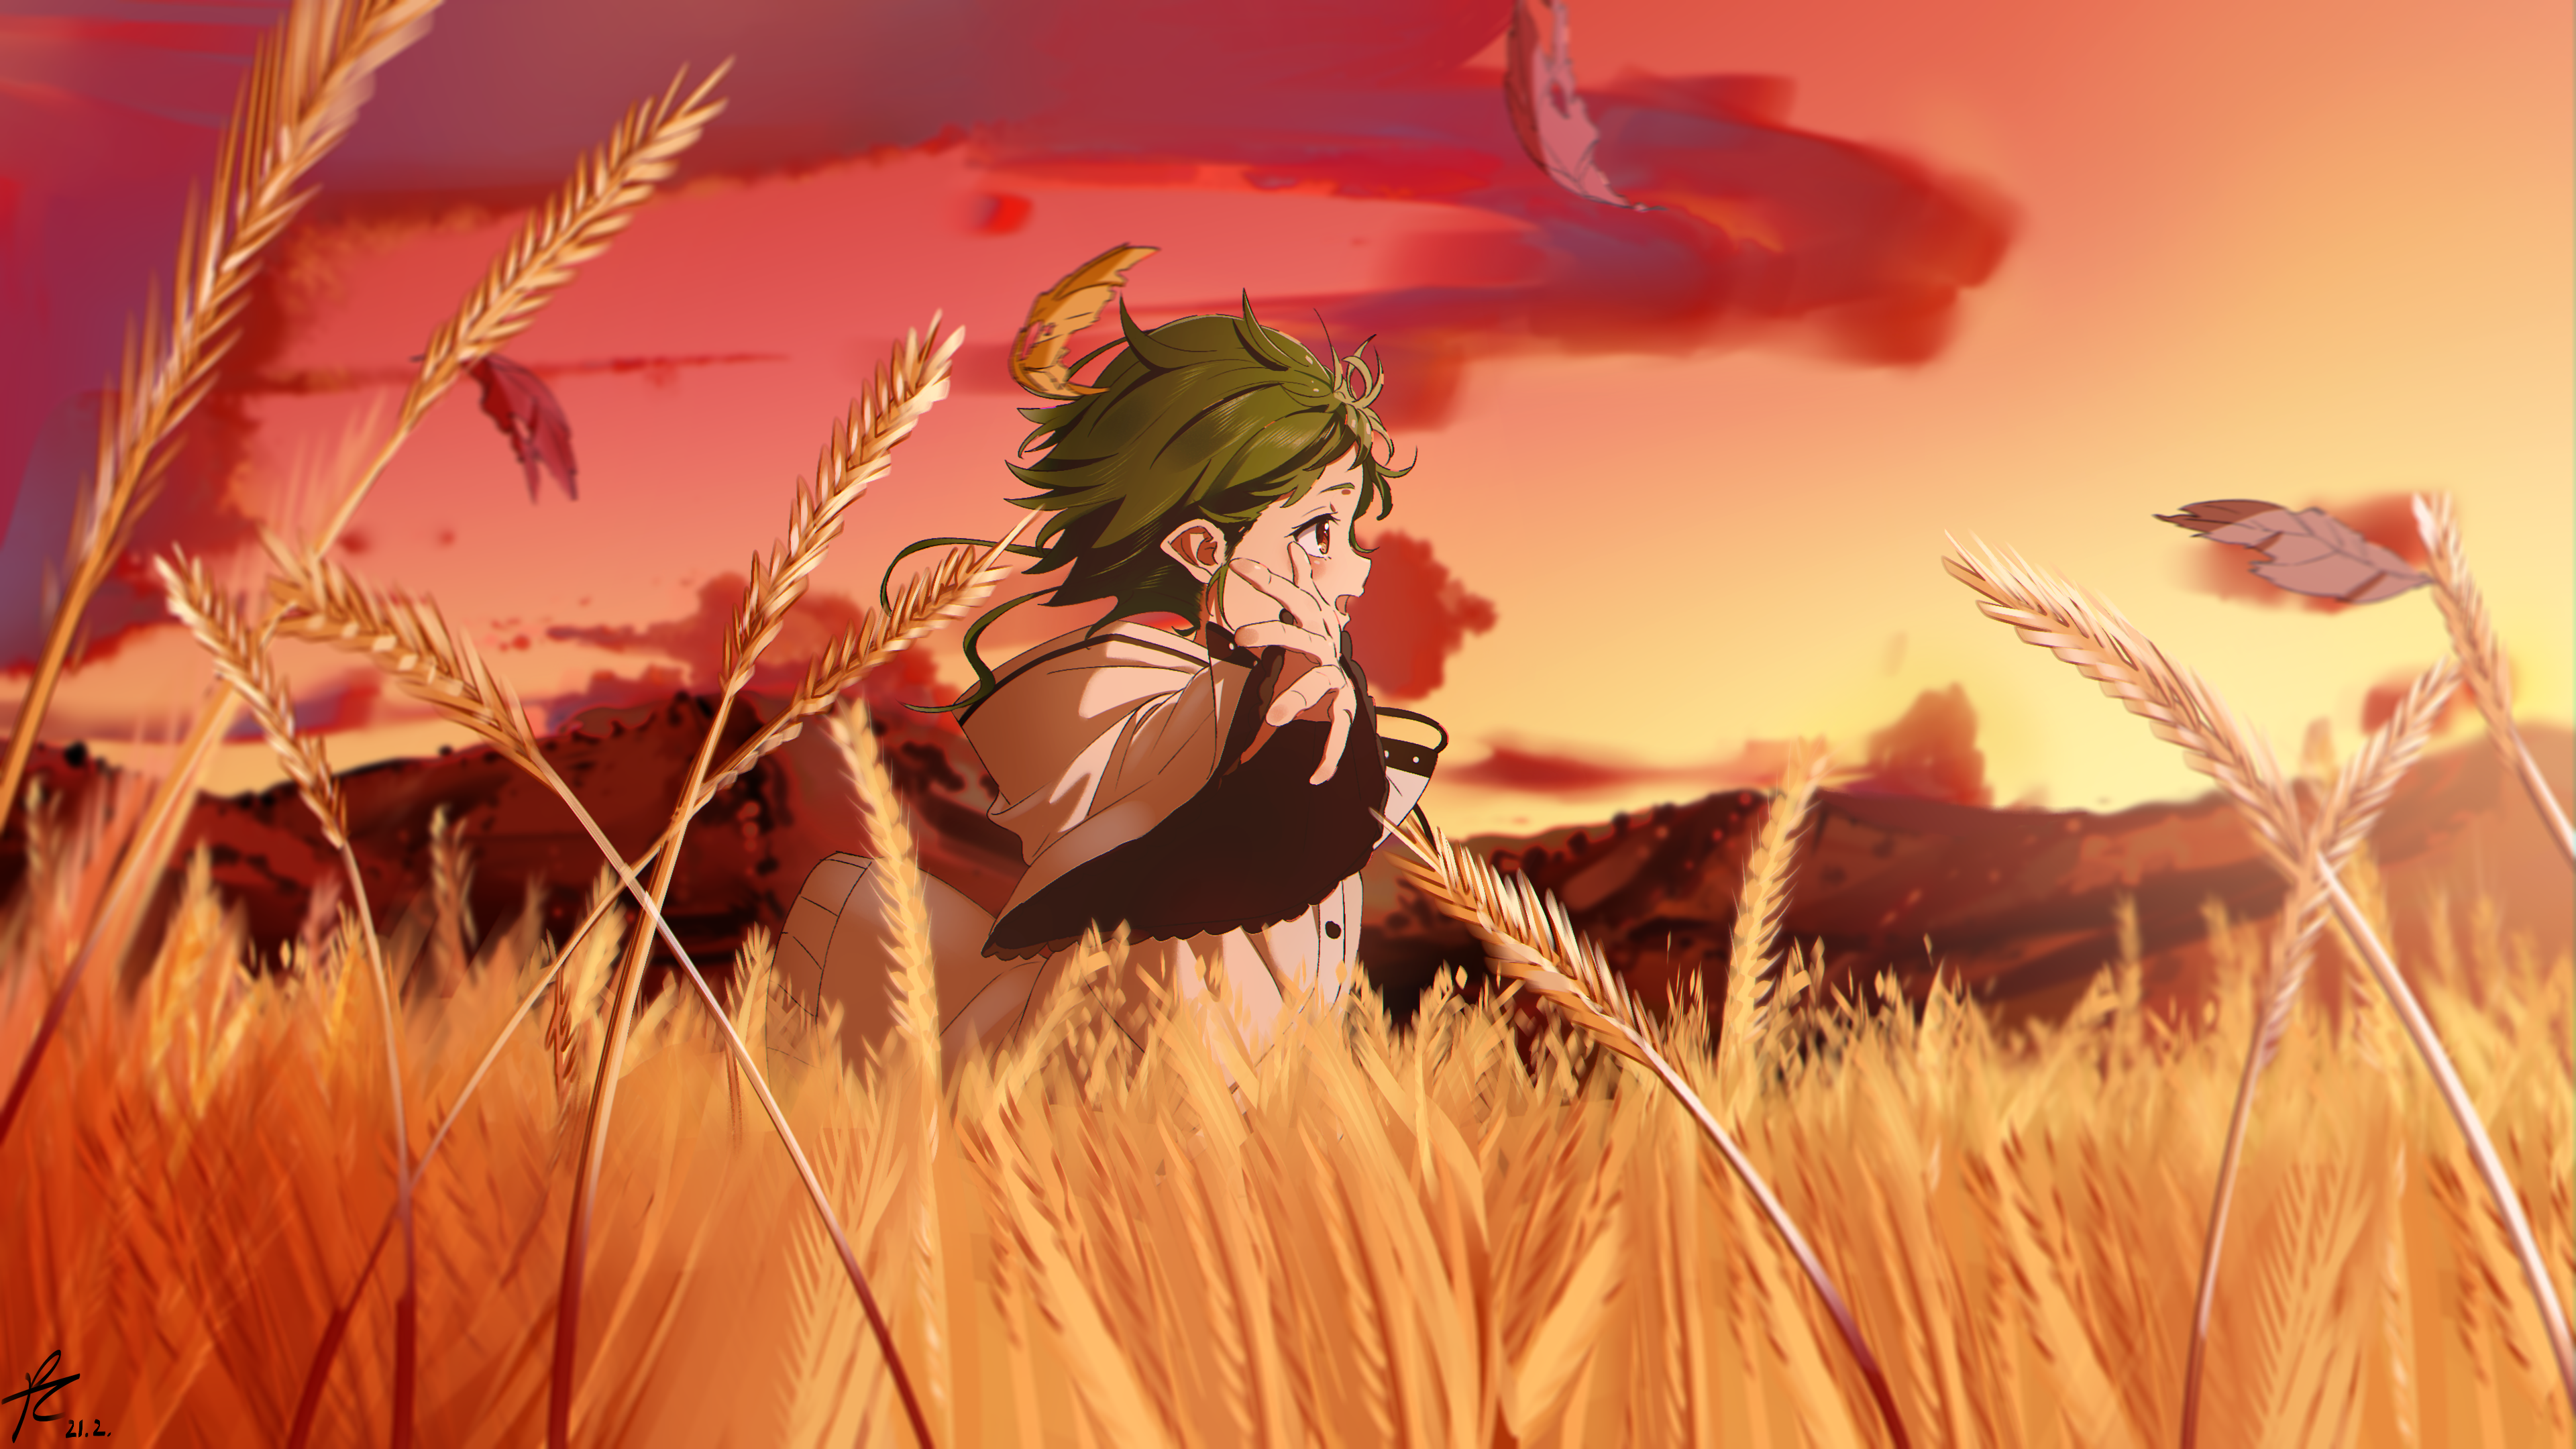 Mushoku Tensei Sylphiette Elves Green Hair Red Eyes Field Sunset Anime Artwork Anime Girls 2D 3840x2160